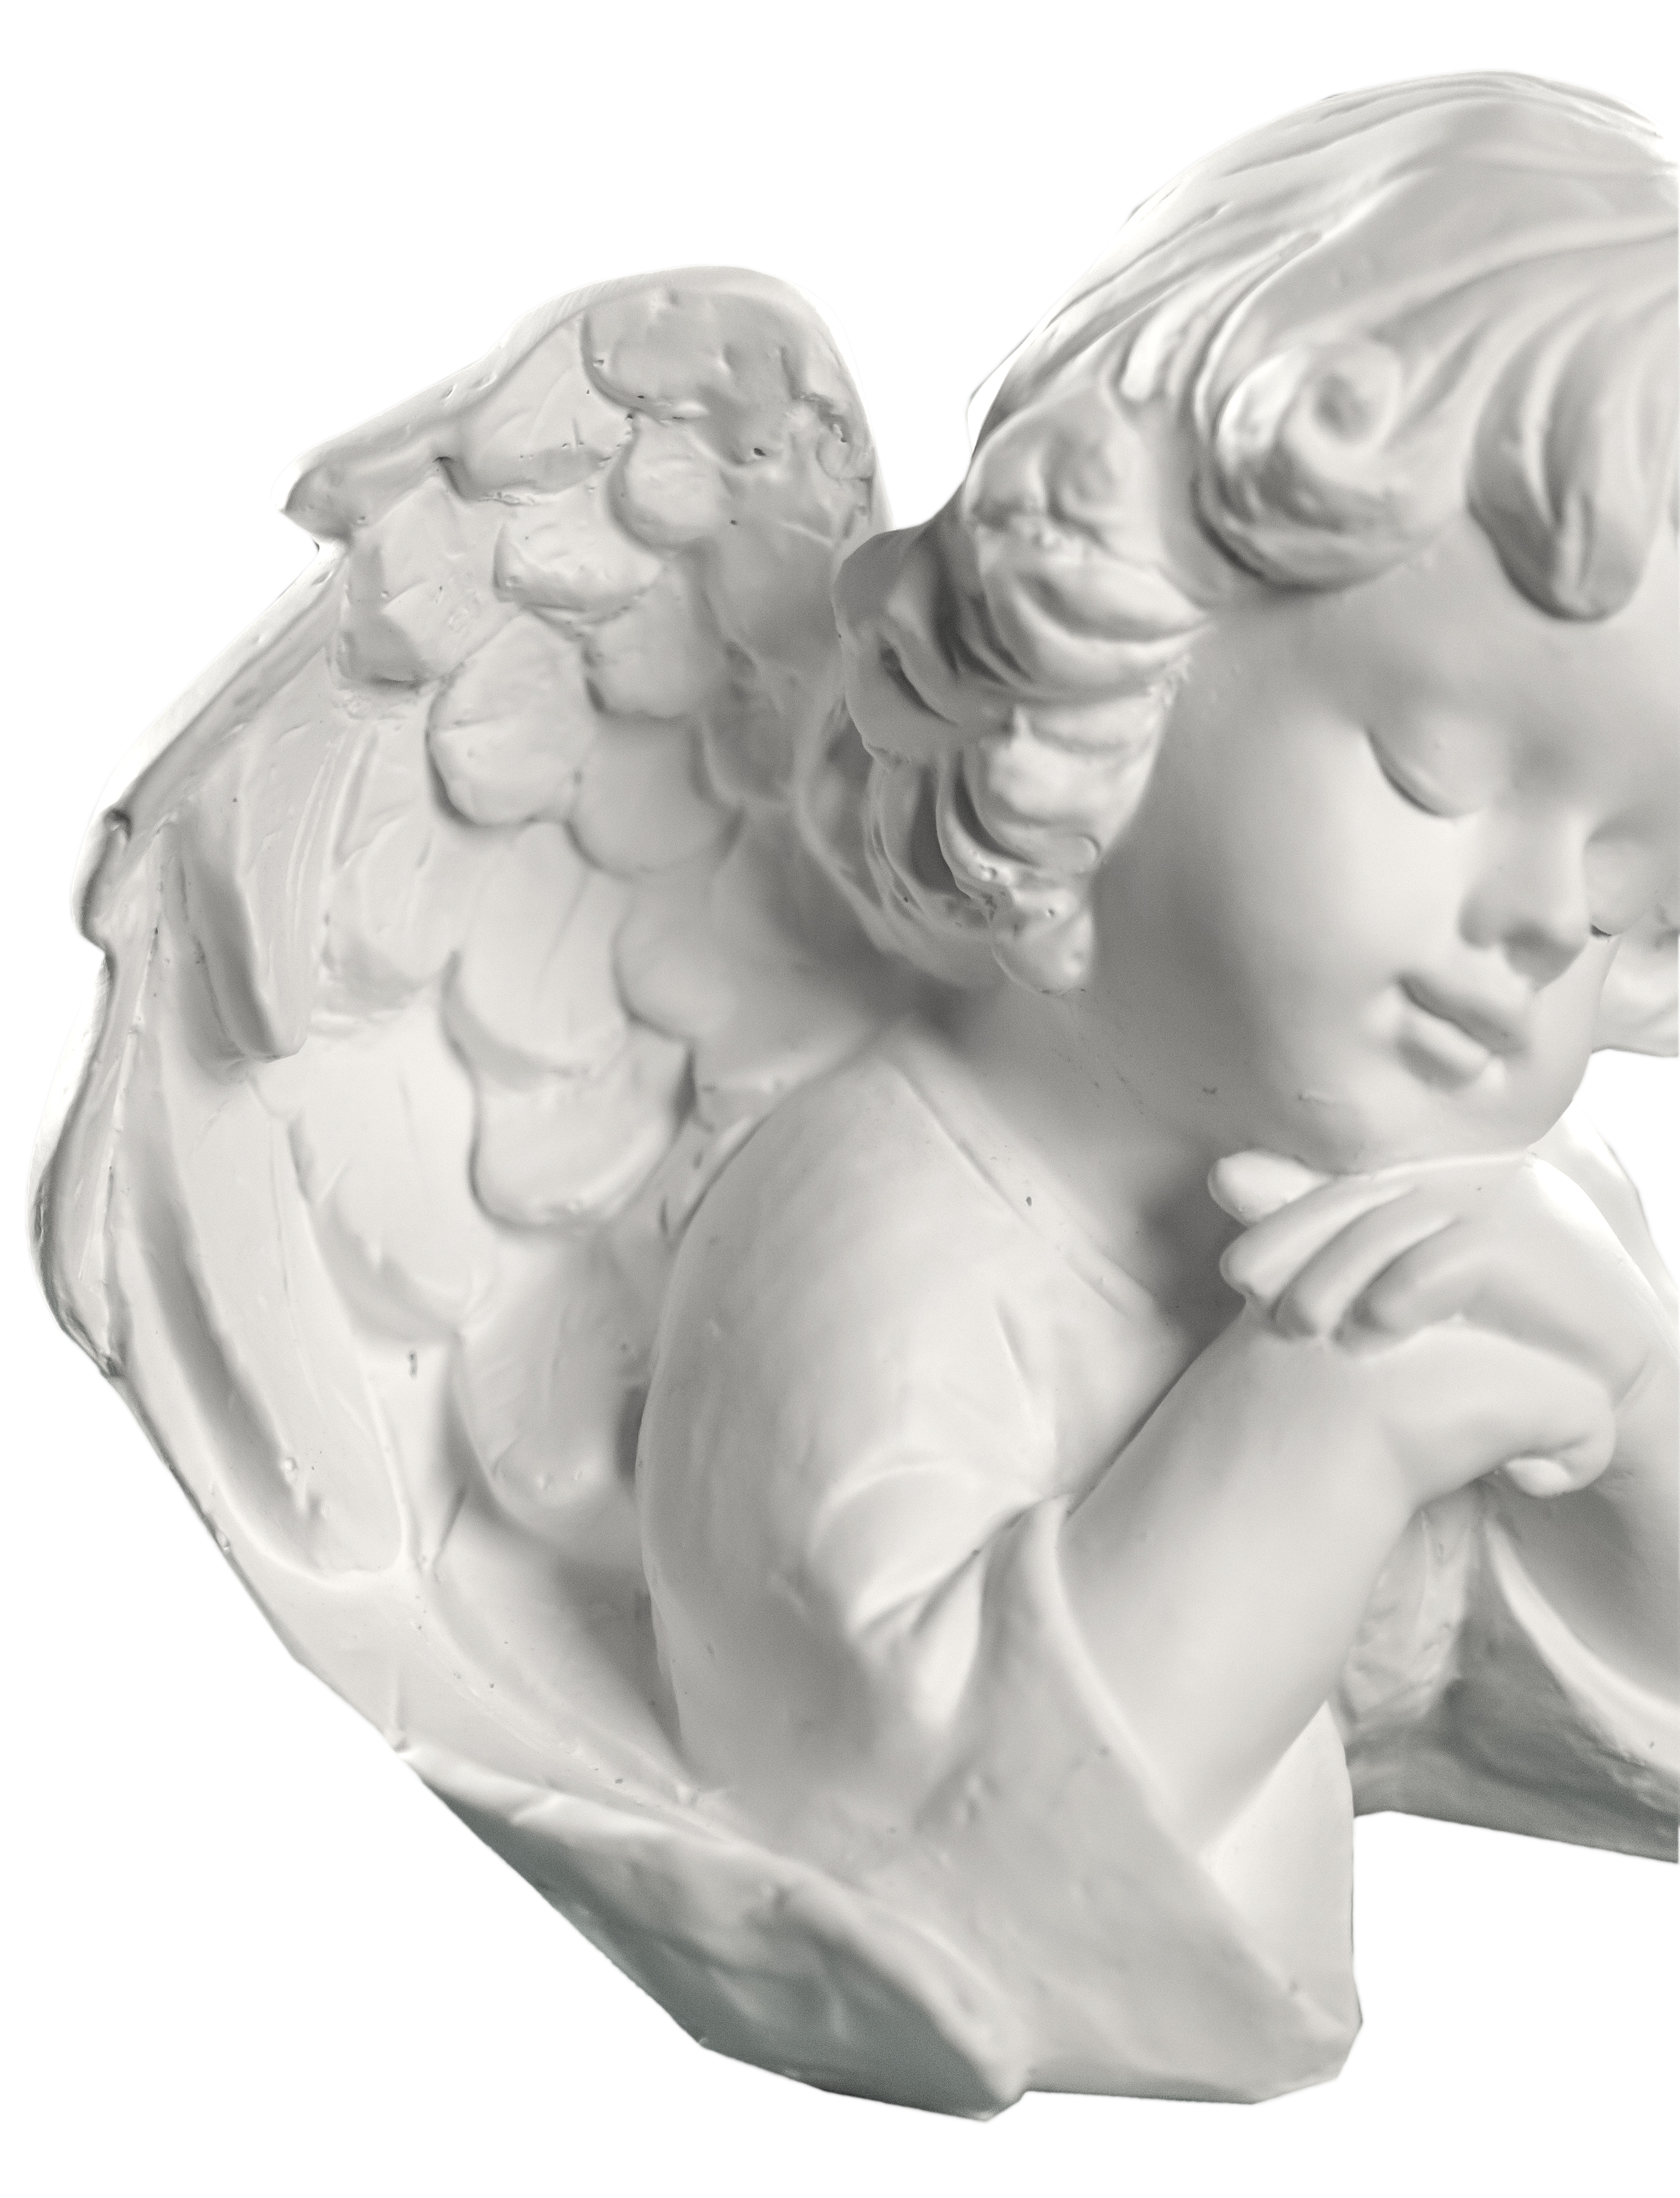 Aniołek w zadumie - Rzeźba sakralna - 20 cm - R18